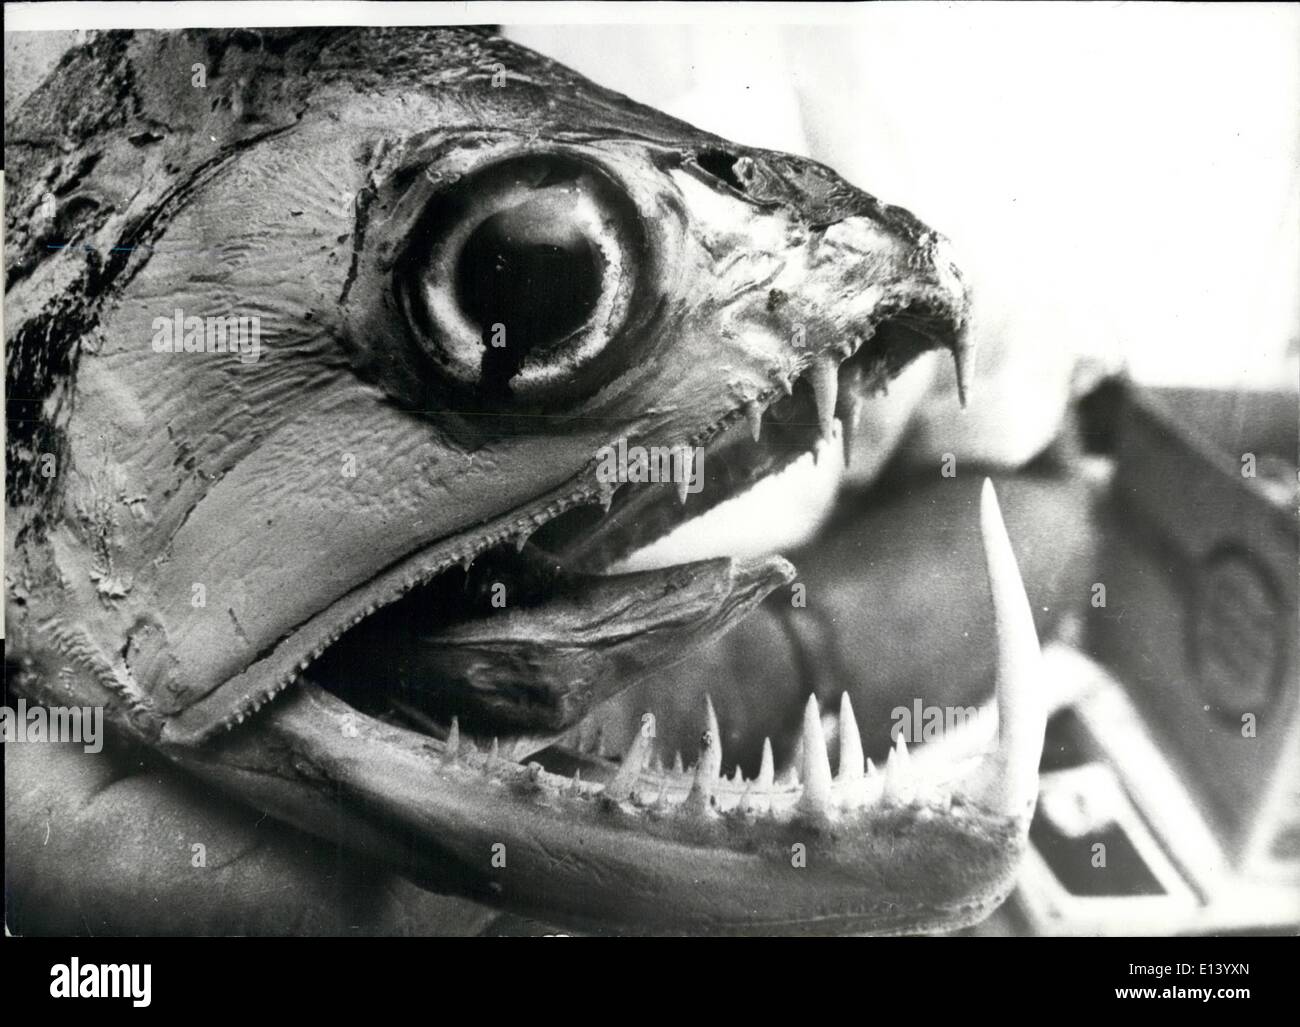 27 mars 2012 - le nom voulu pour les nouveaux poissons grotesques encore jamais vue par l'homme, ce poisson est le dernier grotesque découverte sur notre planète. Le mini-monstre avec sa bouche pleine de dents redoutables a été capturé lors d'un safari dans une rivière à distance du Brésil. Le poisson n'y a pas encore de nom. Banque D'Images